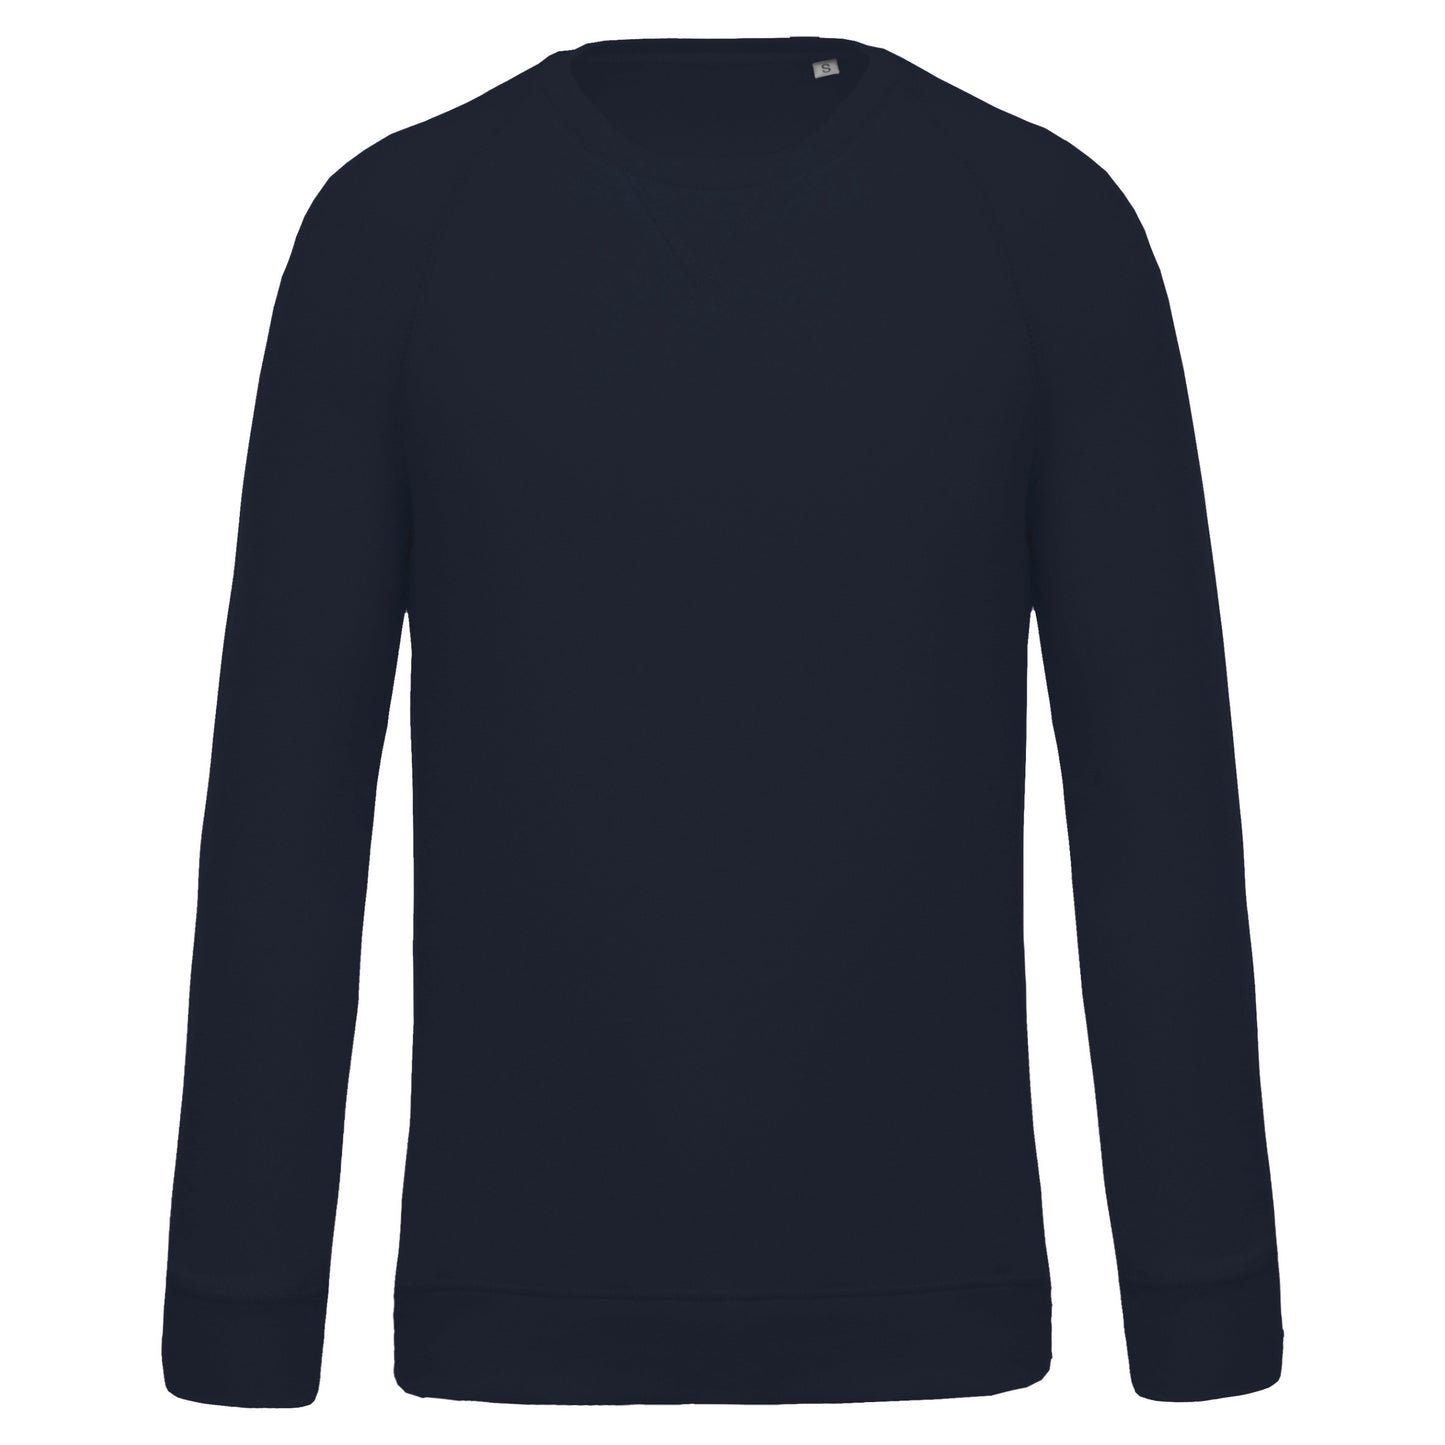 K480 - Sweat-shirt Bio col rond manches raglan homme